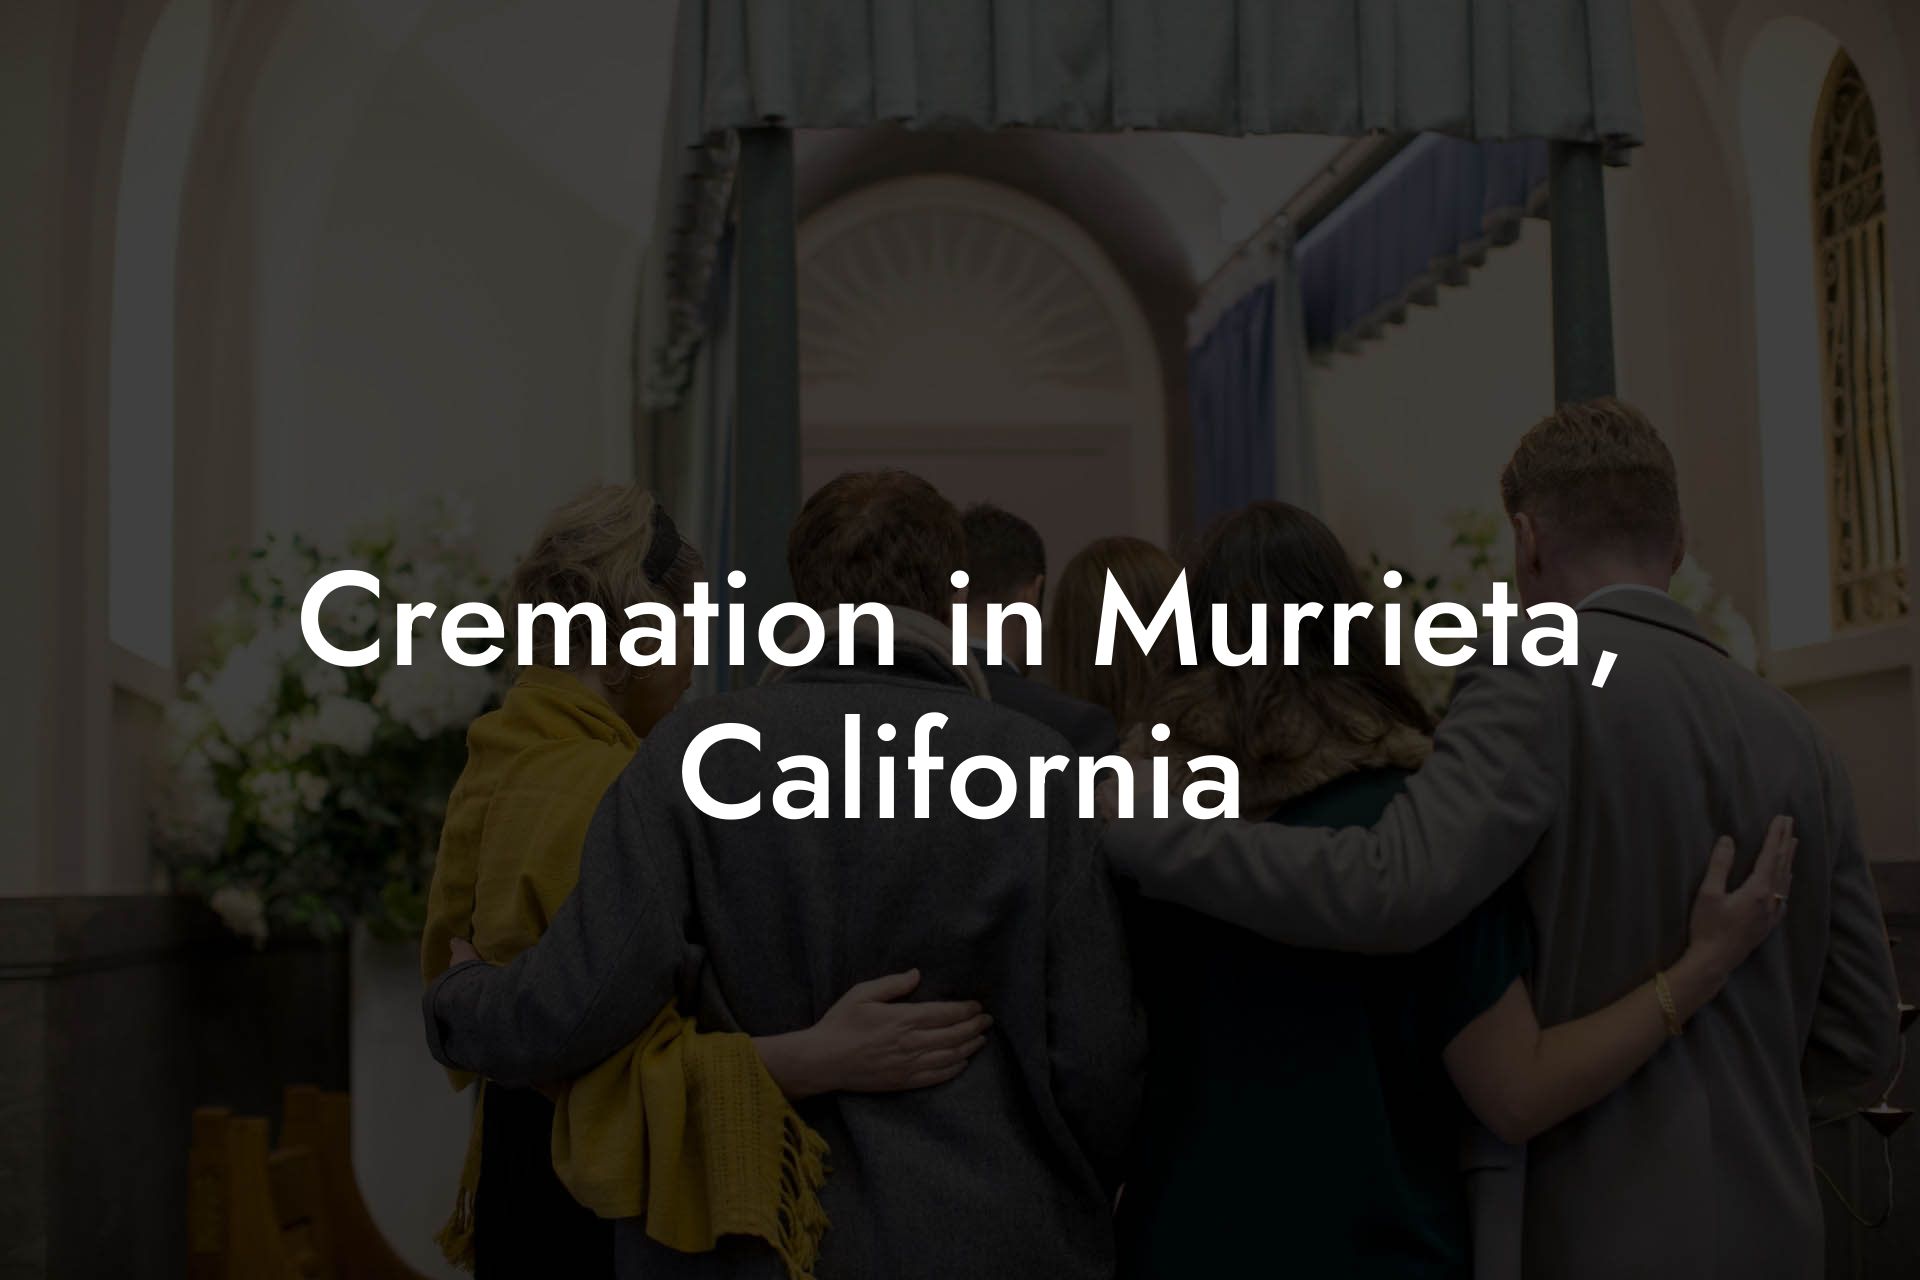 Cremation in Murrieta, California